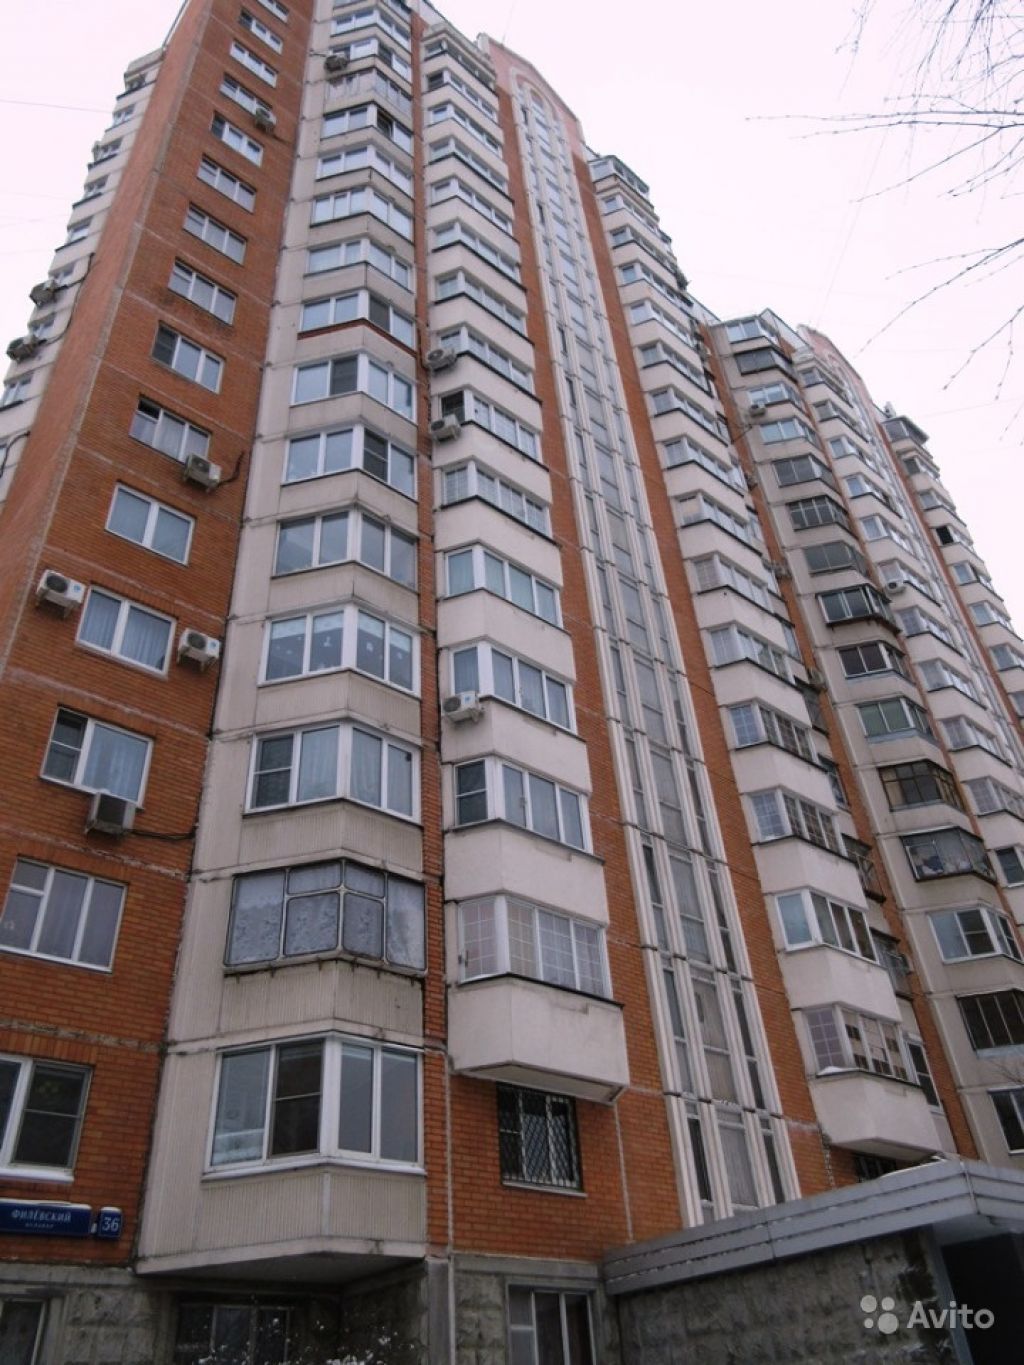 Продам квартиру 1-к квартира 38 м² на 11 этаже 17-этажного панельного дома в Москве. Фото 1